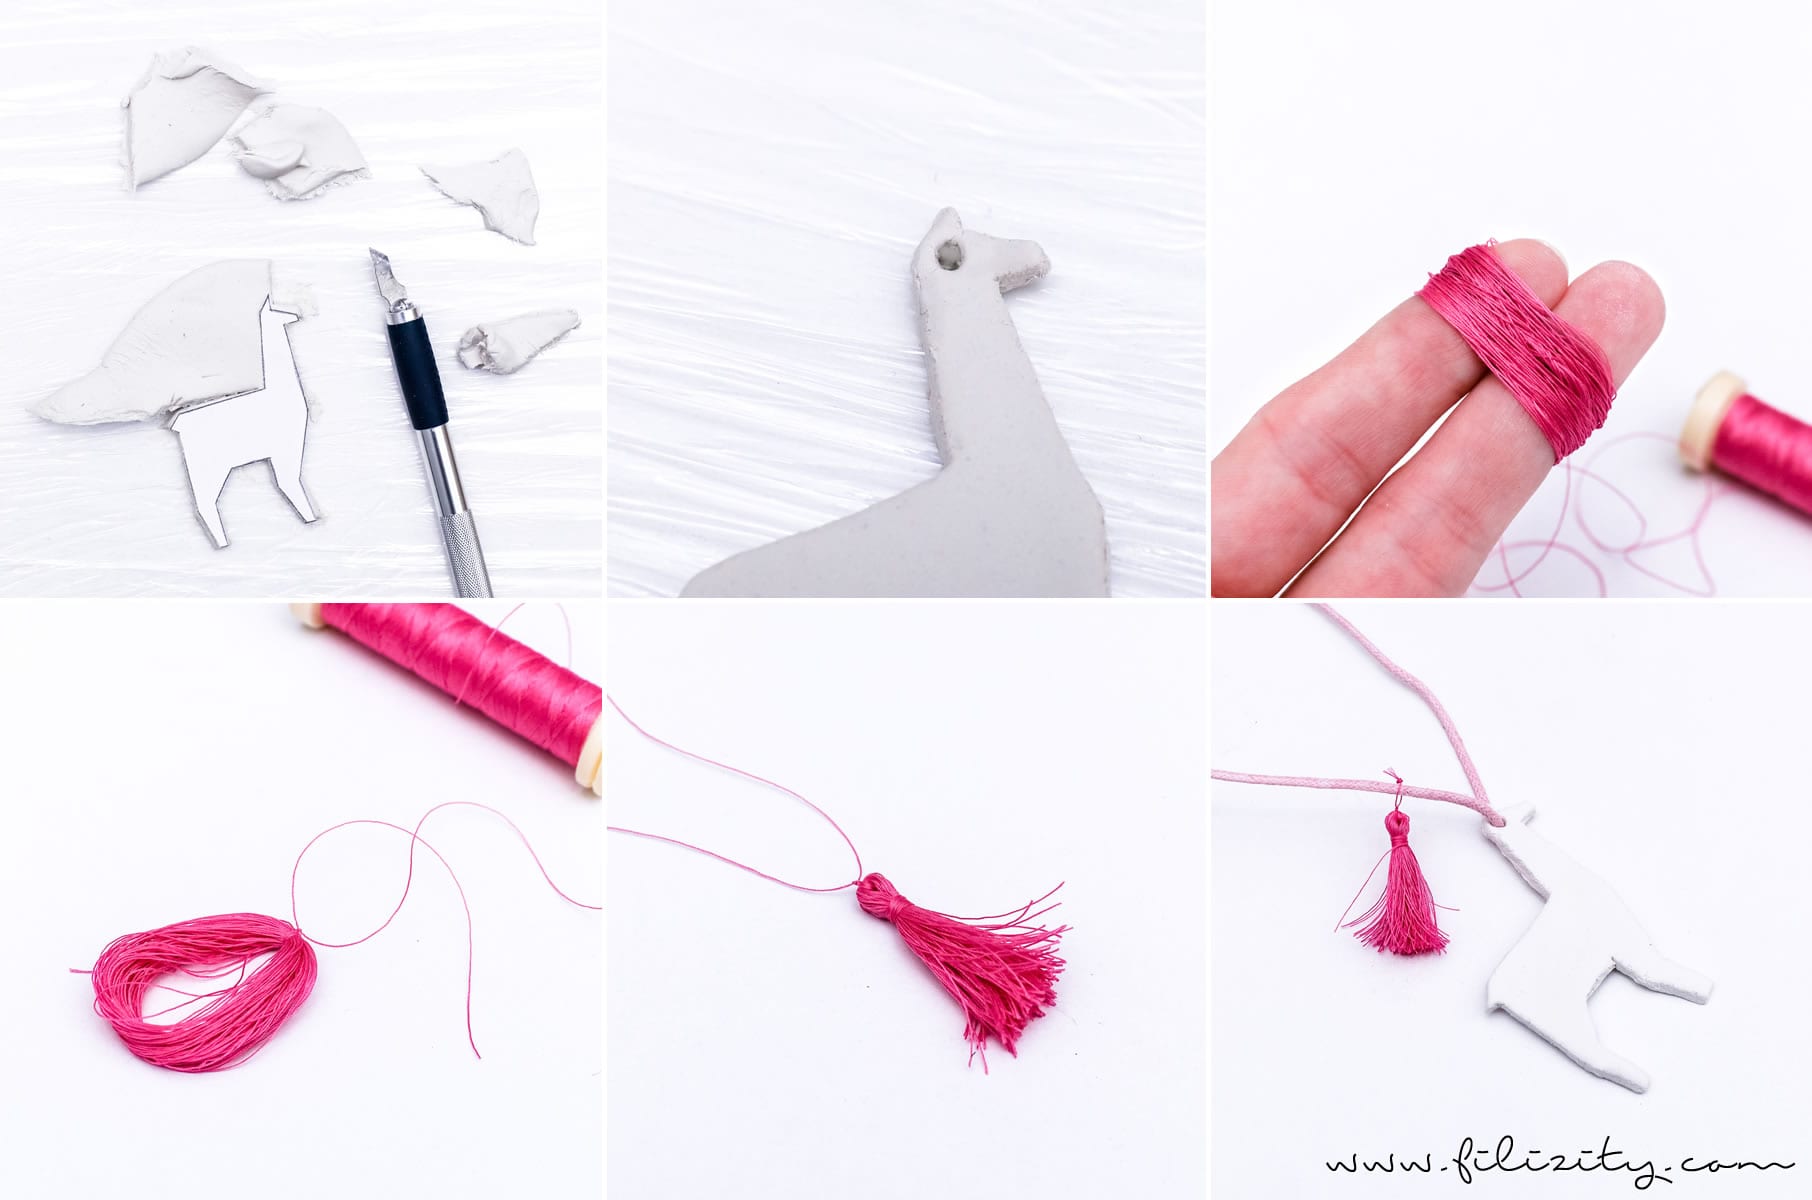 DIY Geschenkidee: Lama Schlüssel- & Taschen-Anhänger aus Modelliermasse | Filizity.com | DIY-Blog aus dem Rheinland #lama #fimo #kaltporzellan